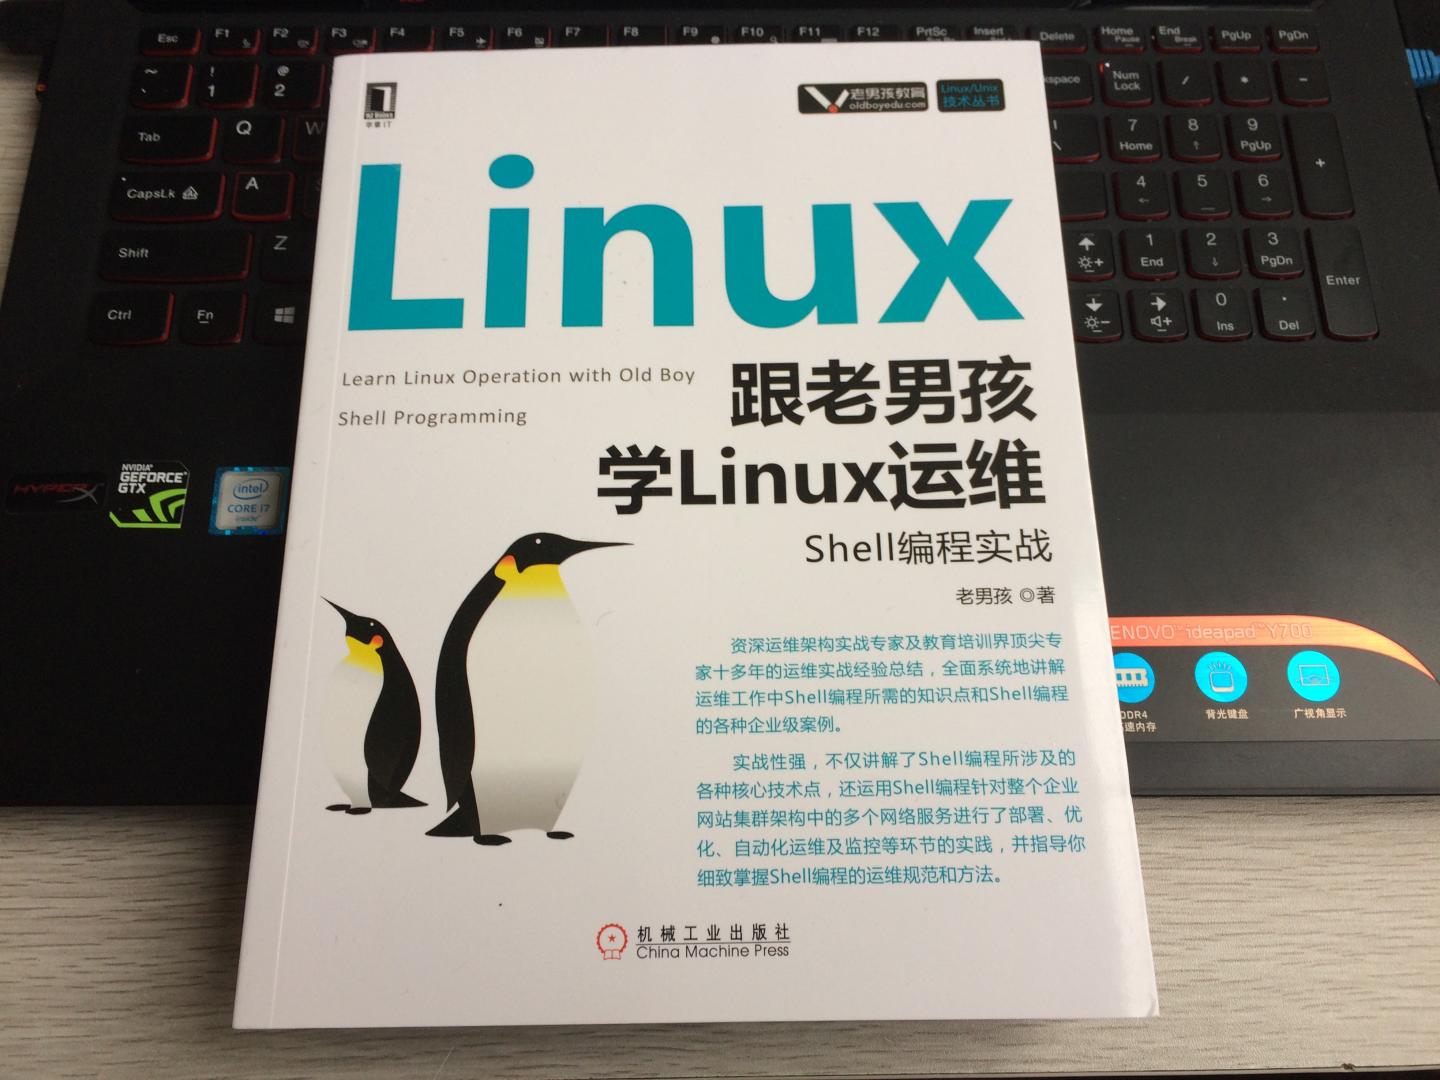 这次老男孩出版的shell专辑“份量”还是可以！相比之前上一版Linux基础要好很多，对初学Linux Shell编程的朋友却是很有帮助，很多shell代码简单修改后就可以直接拿来在实际工作中用，很有学习&参考价值！唯一不足就是这两年华章出版的IT类图书价格有点贵……